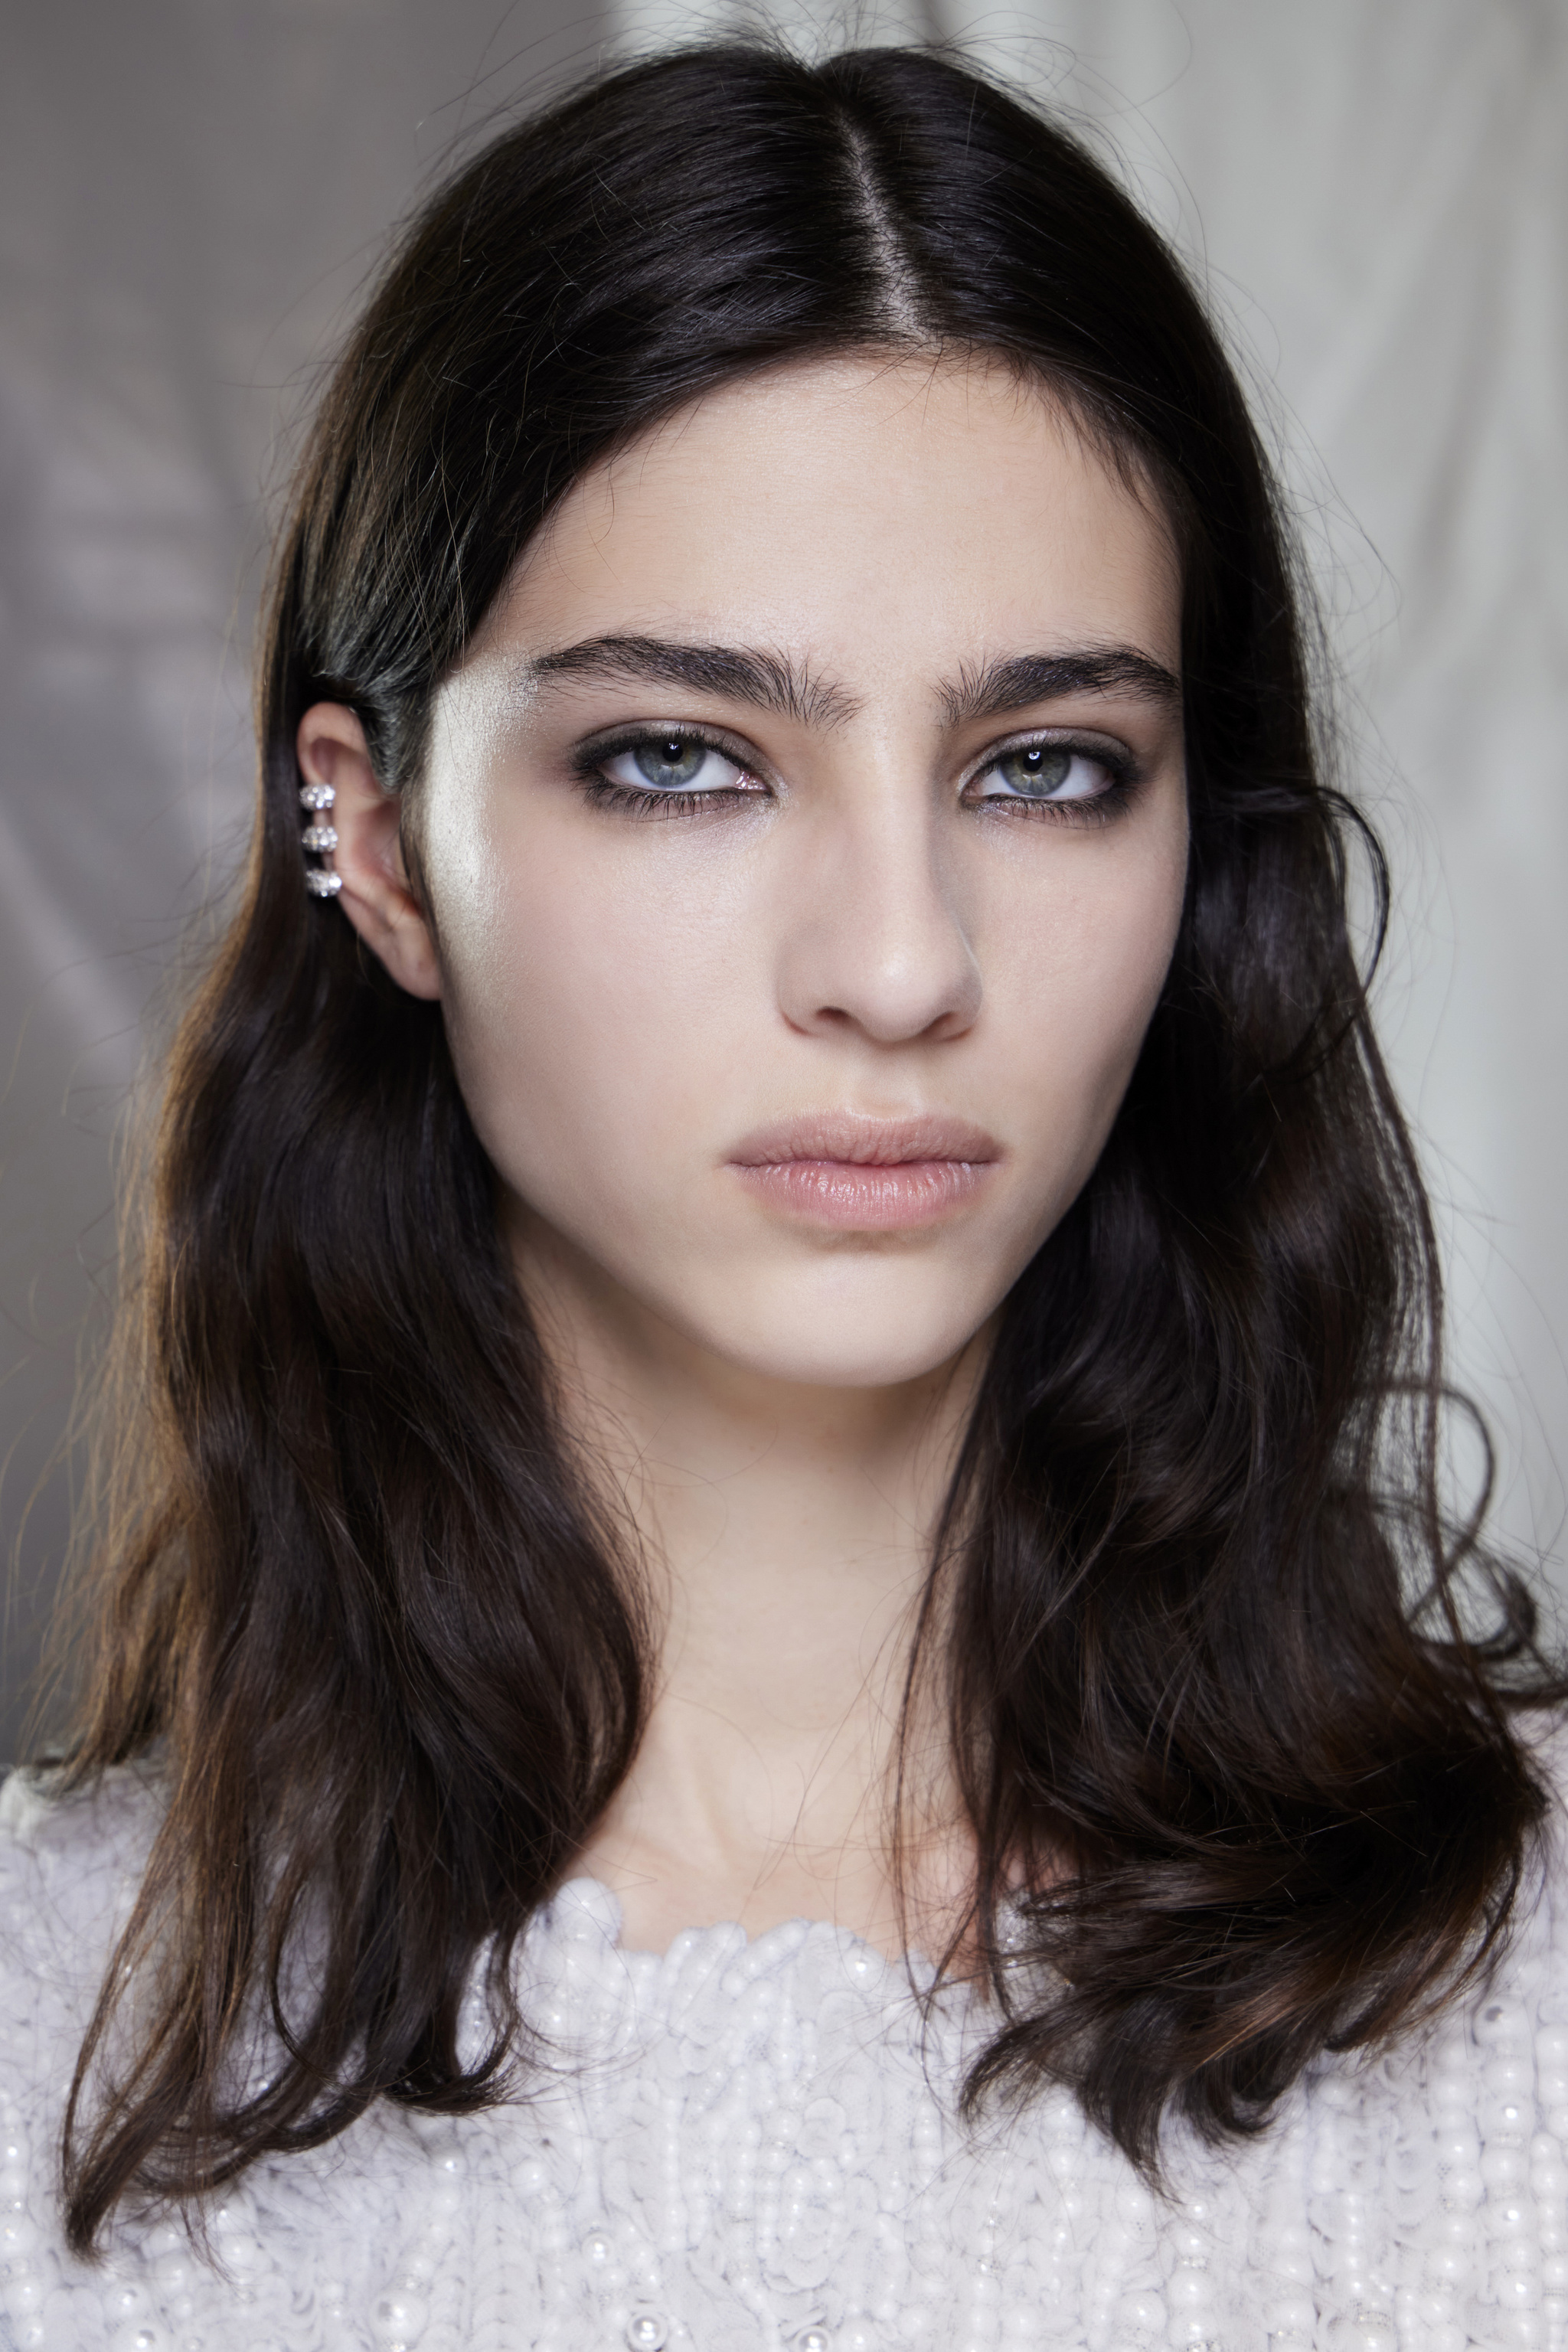 El maquillaje de ojos con lápiz difuminado y ahumado del desfile de Givenchy para este otoño.